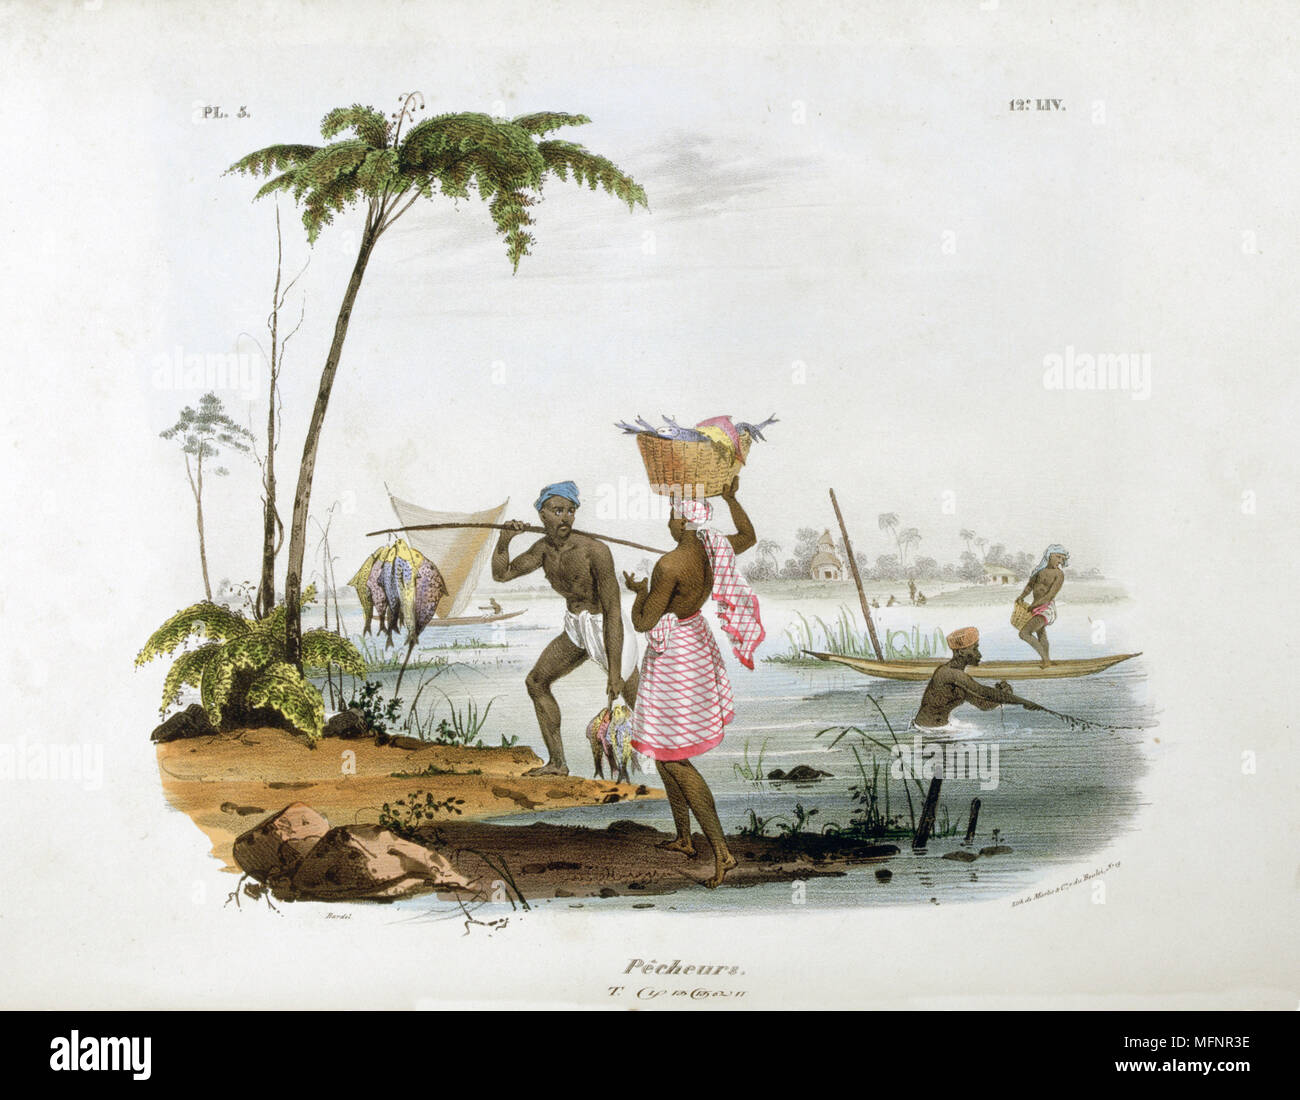 Fischer, die mit Kanus und Netze in einem Fluss. Der Mensch trägt fangen auf der Pole und Frau Salden ein Korb mit Fisch auf den Kopf. Handcolorierte Lithographie von 'L'Inde francaise", Paris, 1828. Essen Stockfoto